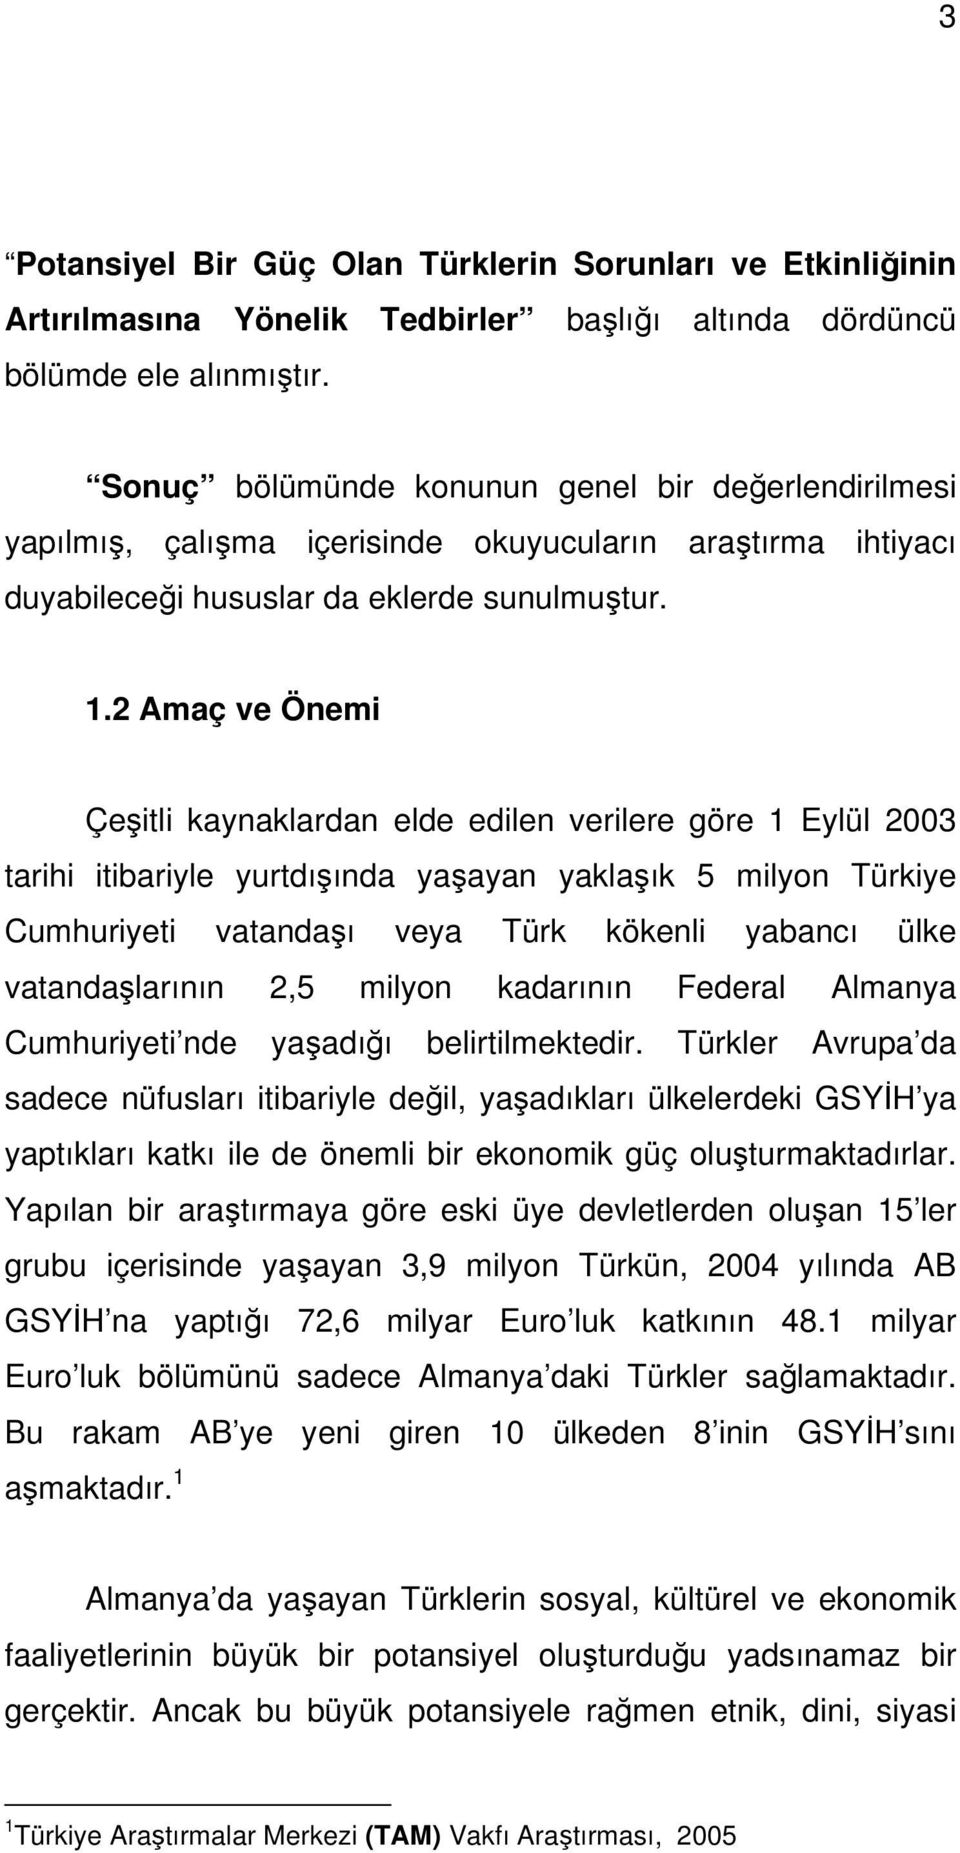 2 Amaç ve Önemi Çeşitli kaynaklardan elde edilen verilere göre 1 Eylül 2003 tarihi itibariyle yurtdışında yaşayan yaklaşık 5 milyon Türkiye Cumhuriyeti vatandaşı veya Türk kökenli yabancı ülke